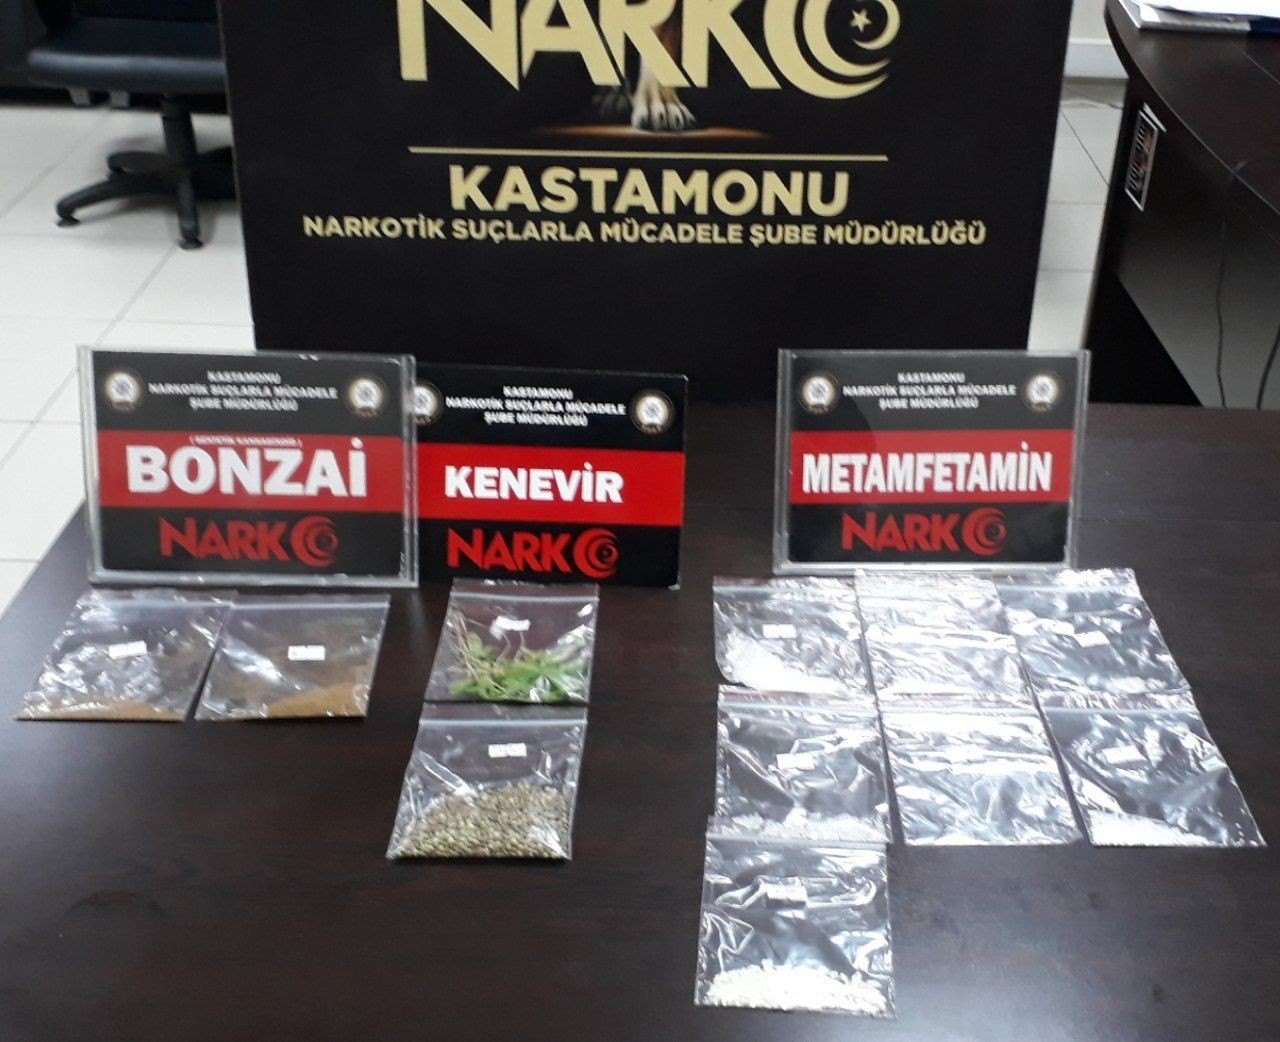 Kastamonu’da uyuşturucu operasyonu: 2 gözaltı #kastamonu